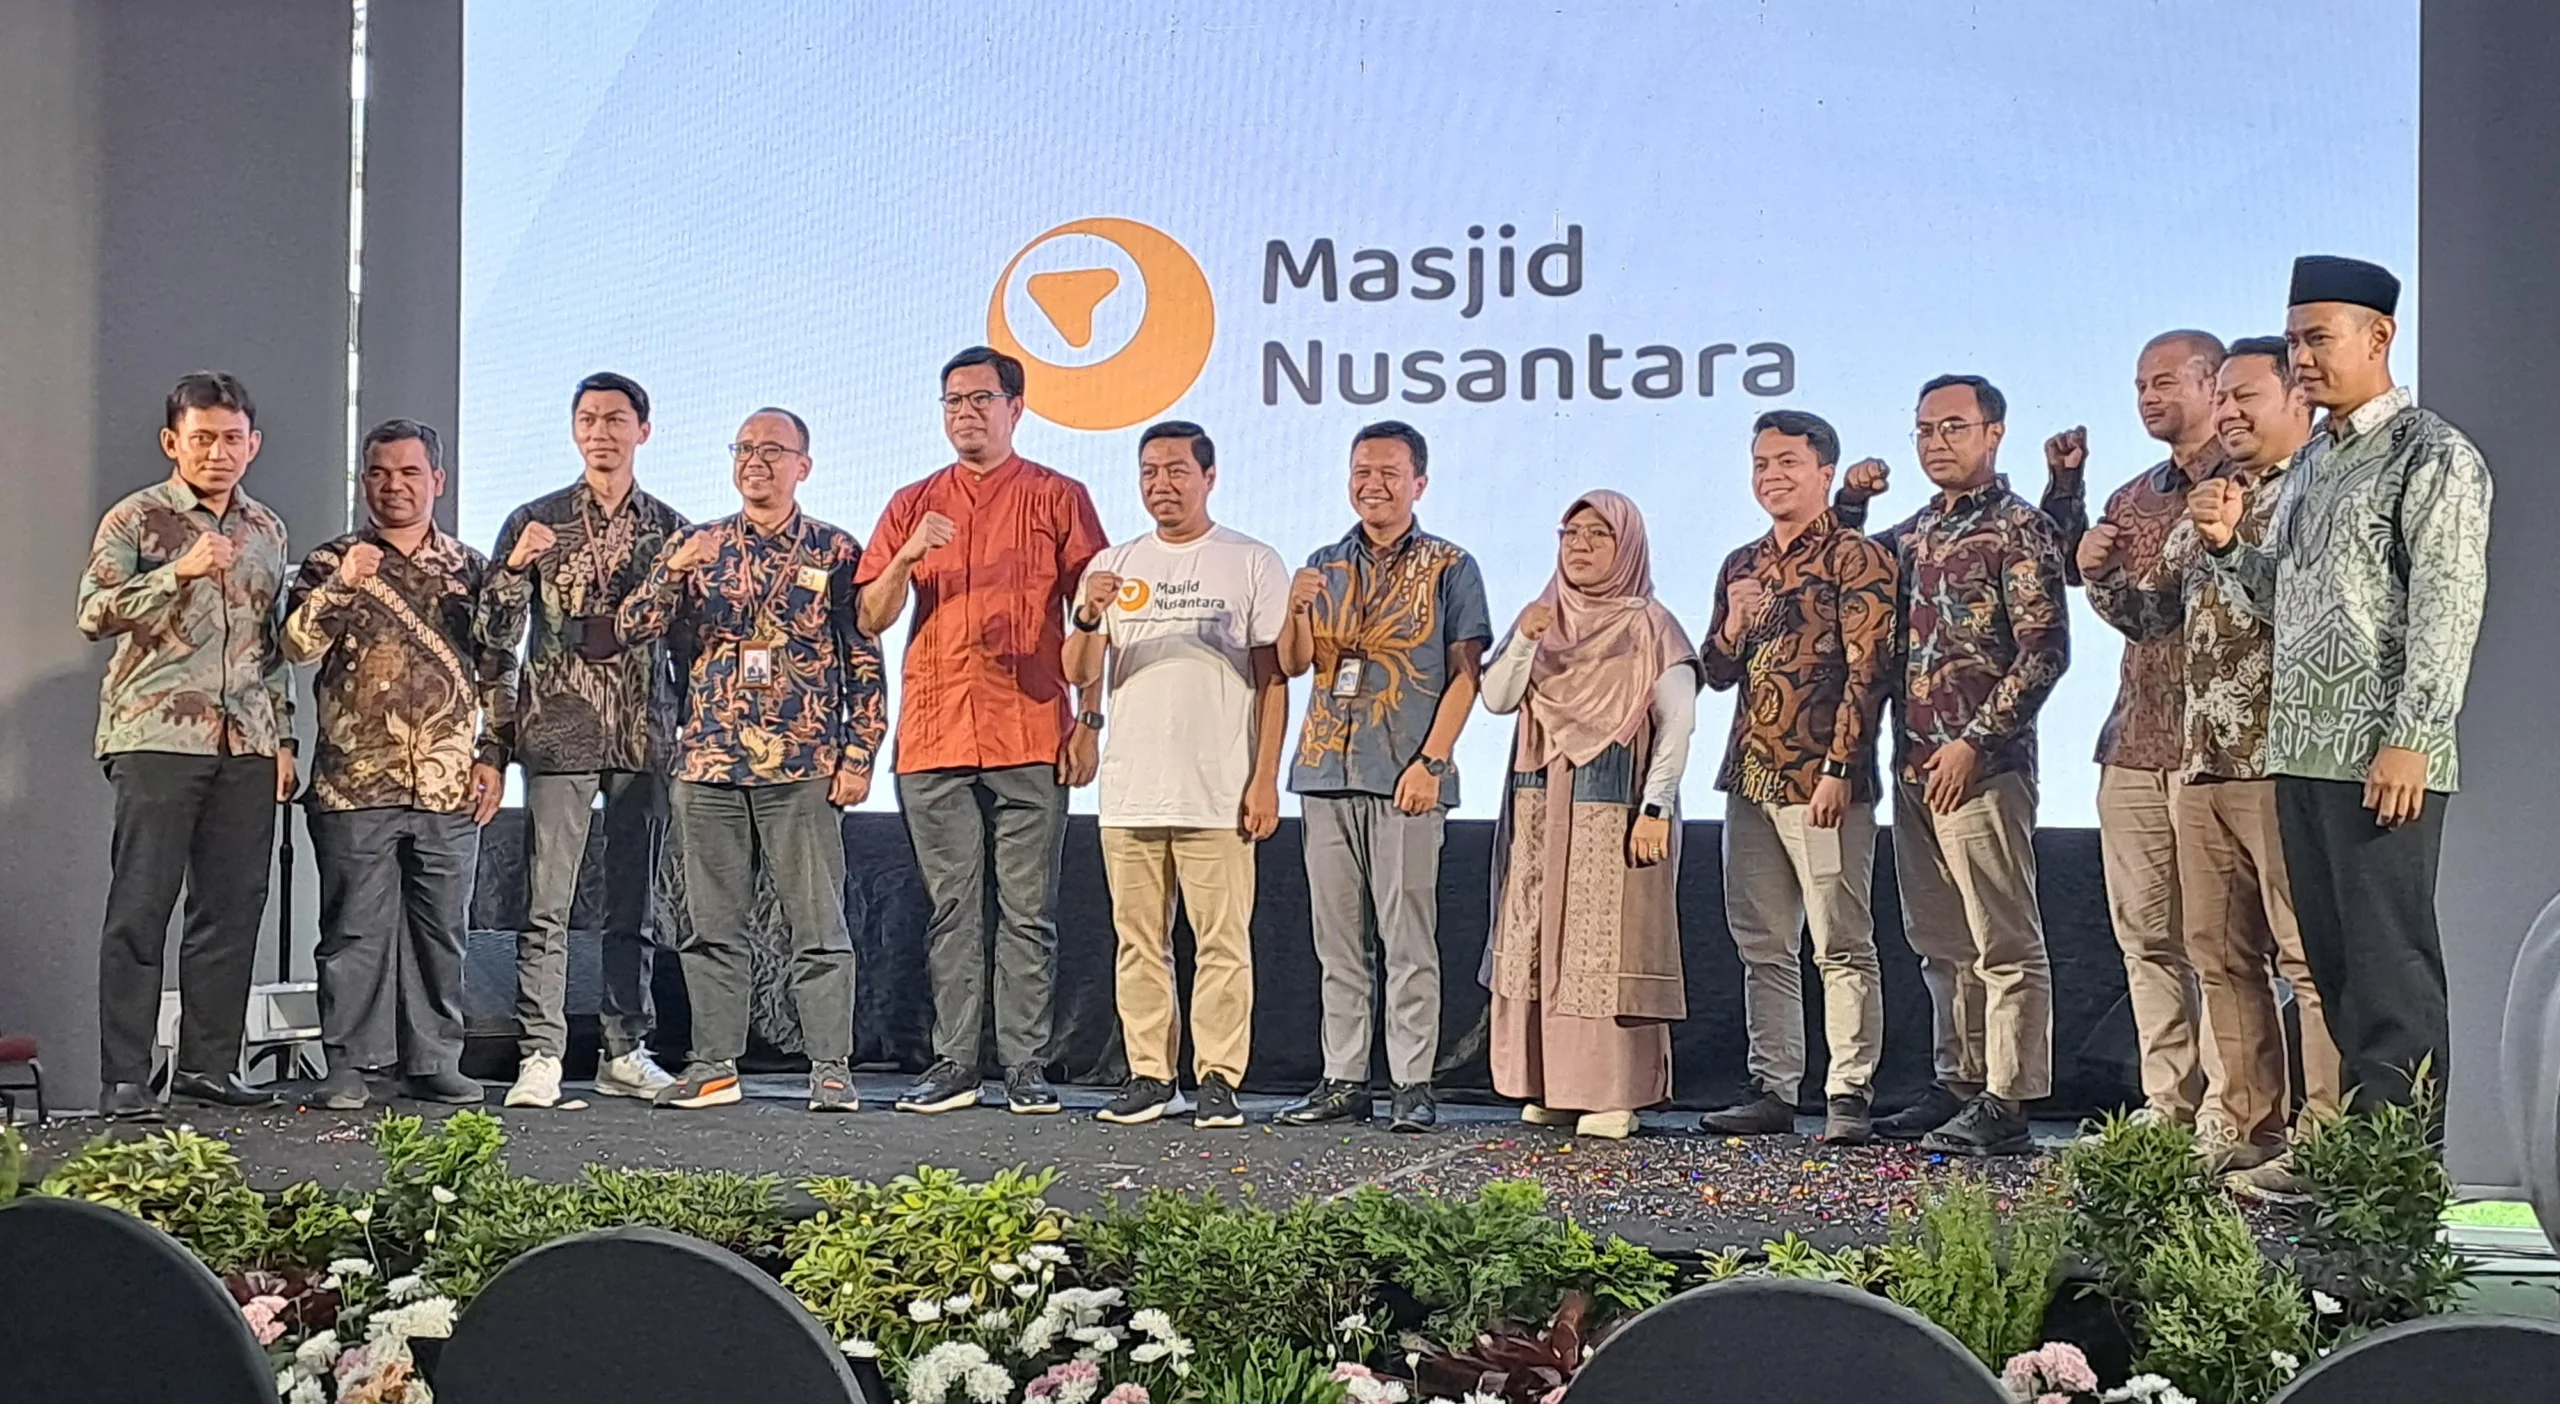 Masjid Nusantara: Satu Dekade Memakmurkan Masjid di Indonesia, Target Bangun 35 Masjid Baru di Tahun 2024